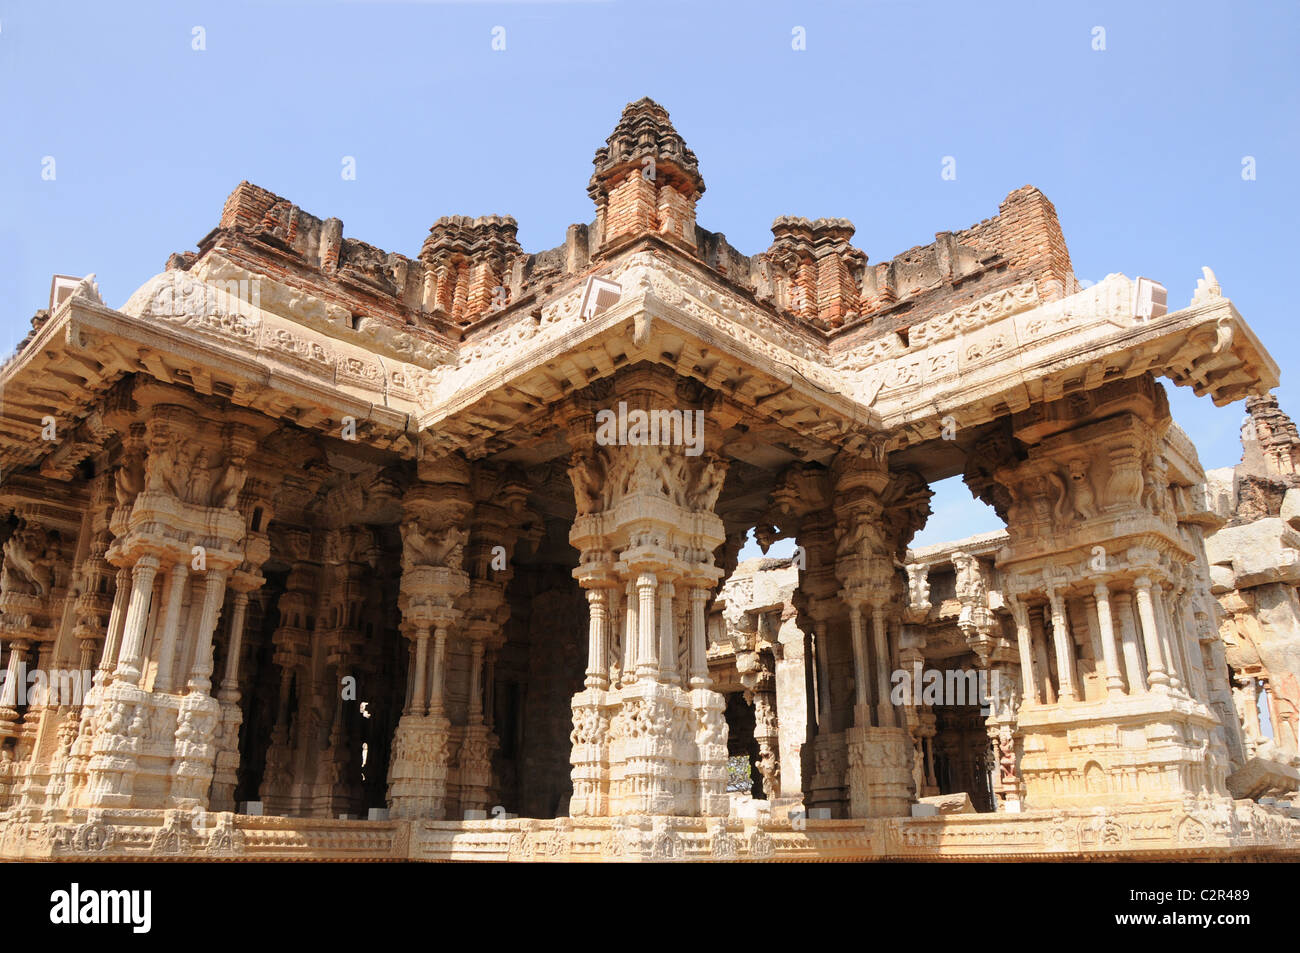 Vittala temple, un monument du patrimoine mondial Banque D'Images